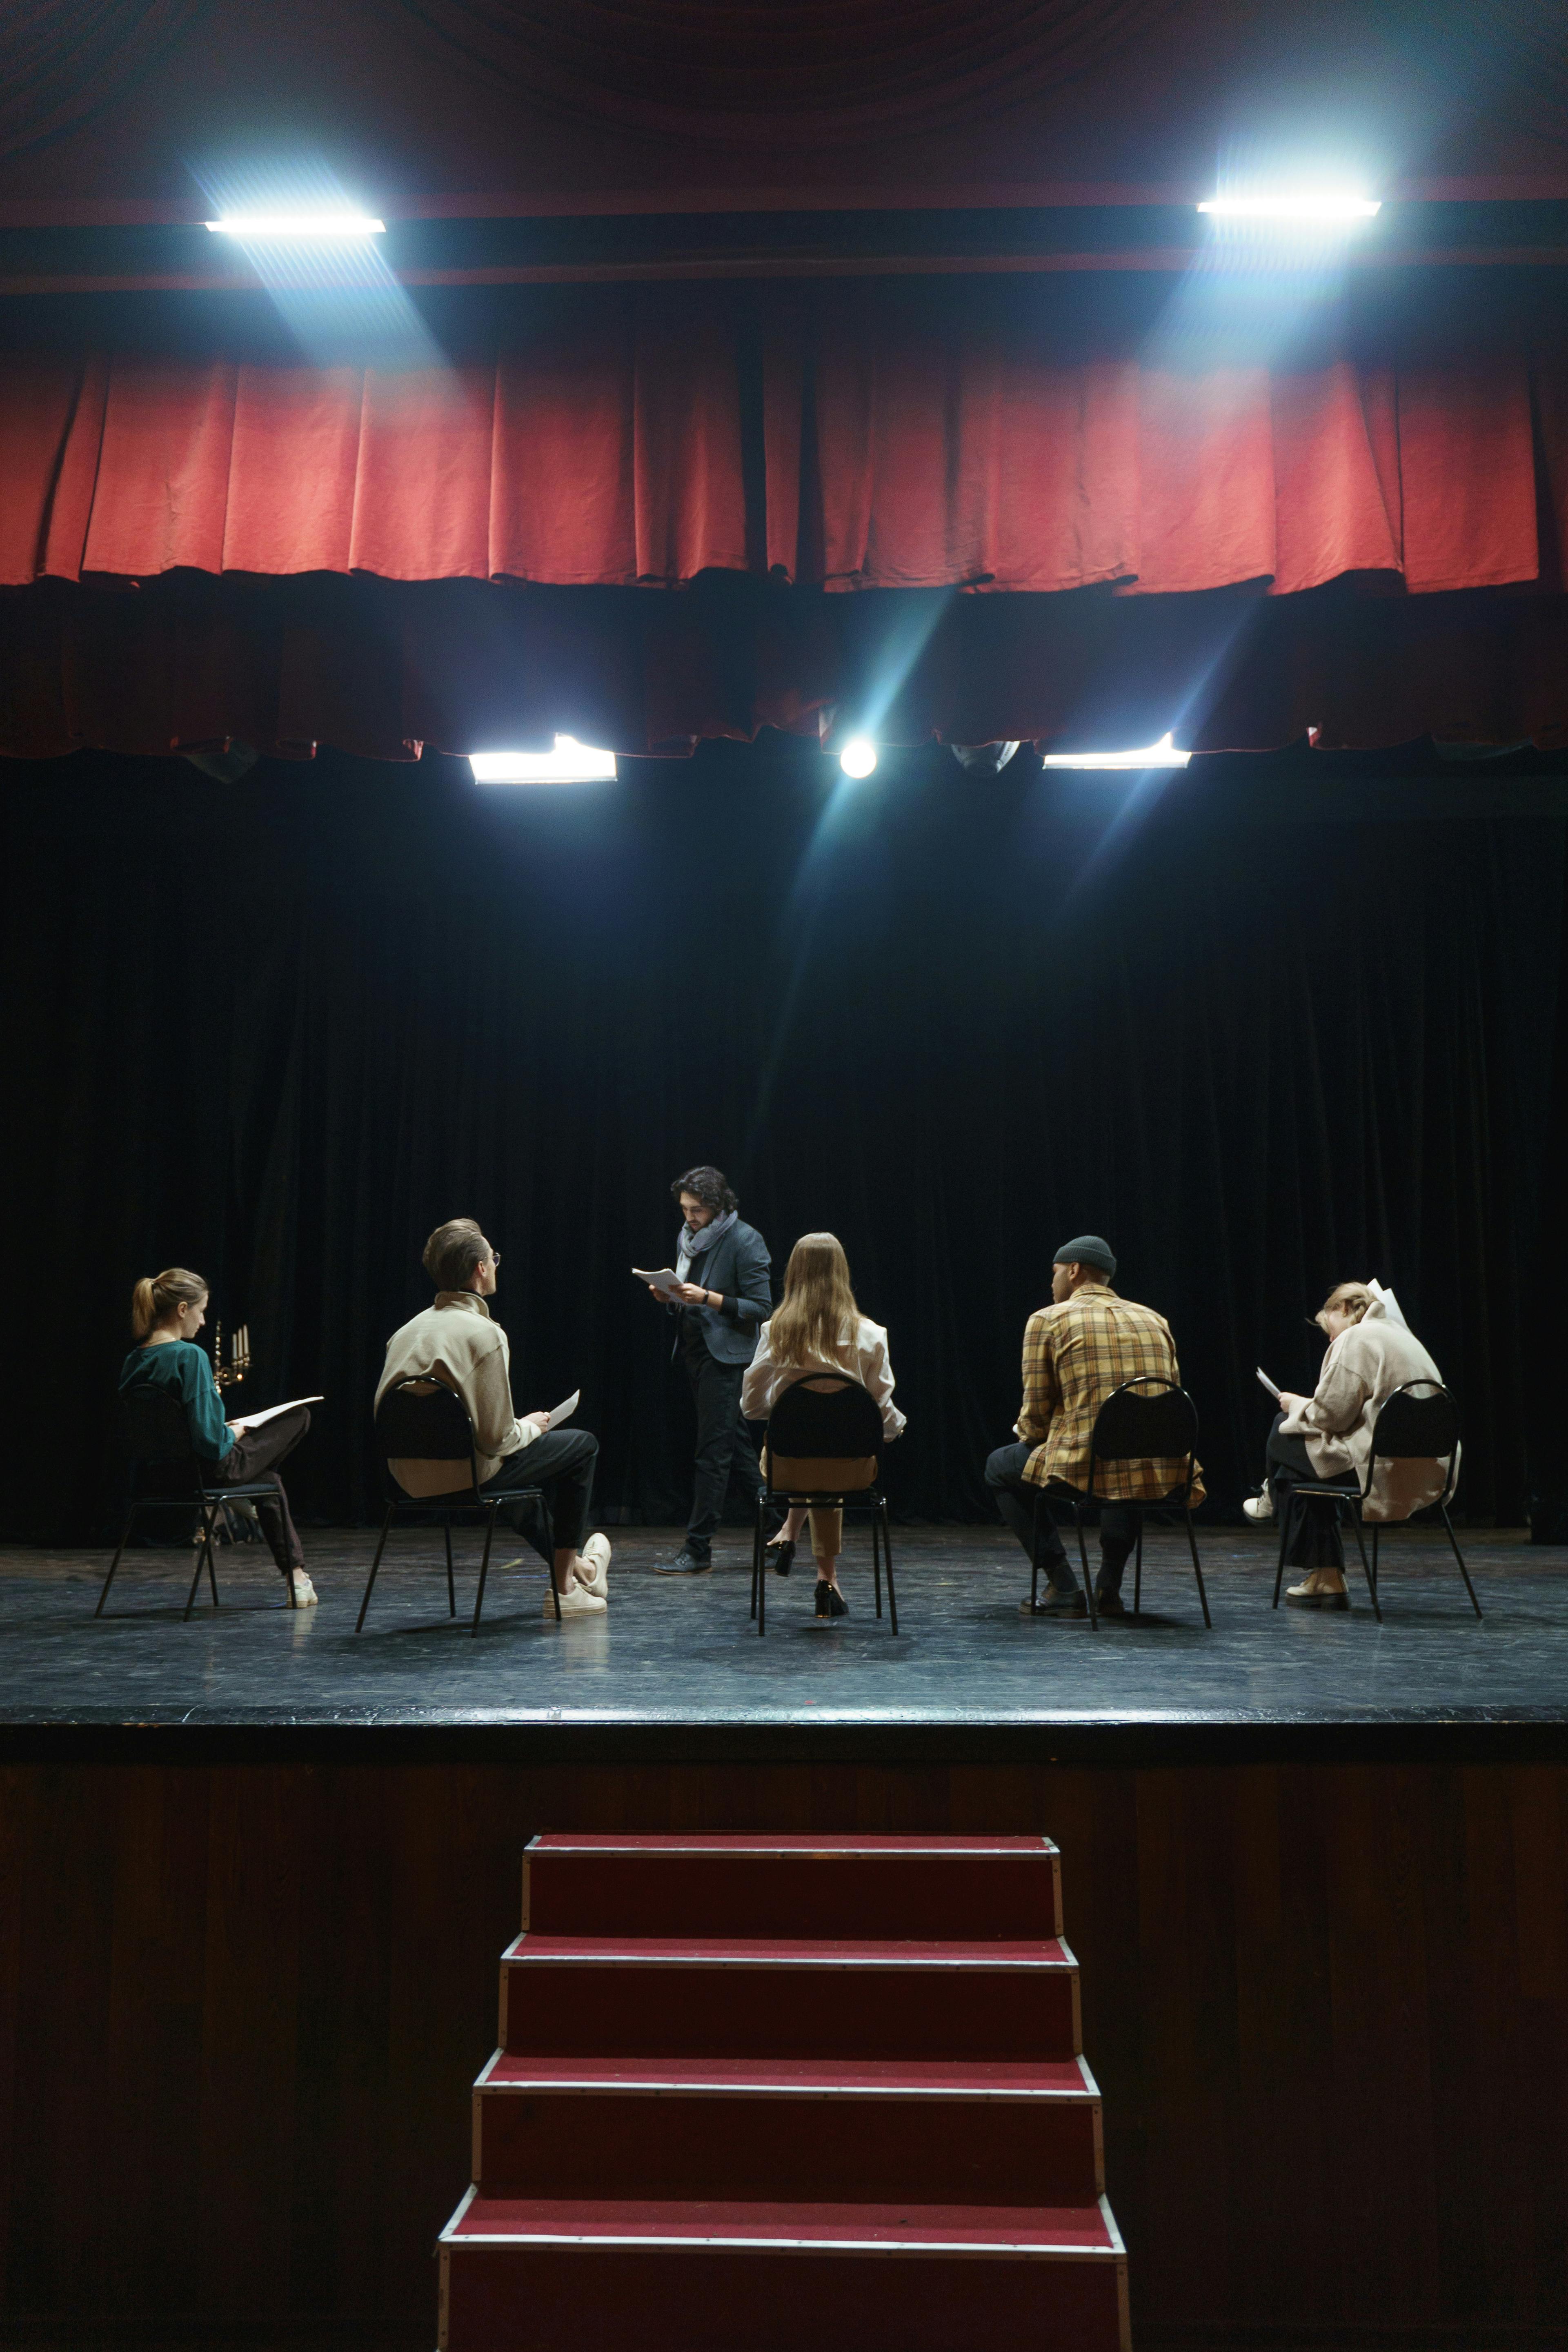 Persones assajant en un teatre. Font: Pexels - Cottombro Studio